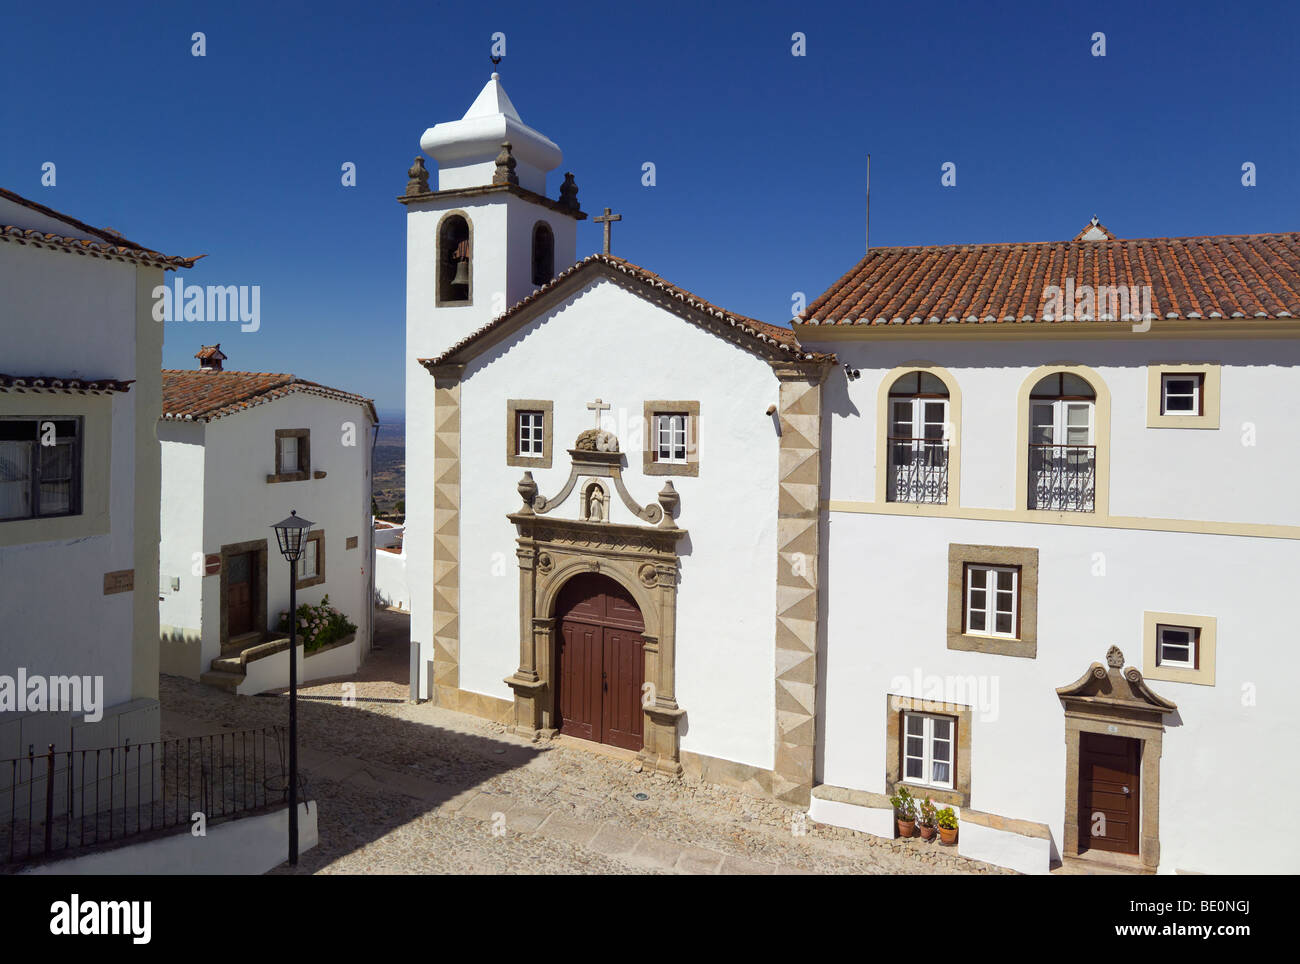 Portugal, the Alto Alentejo, Marvao, street scenea Stock Photo